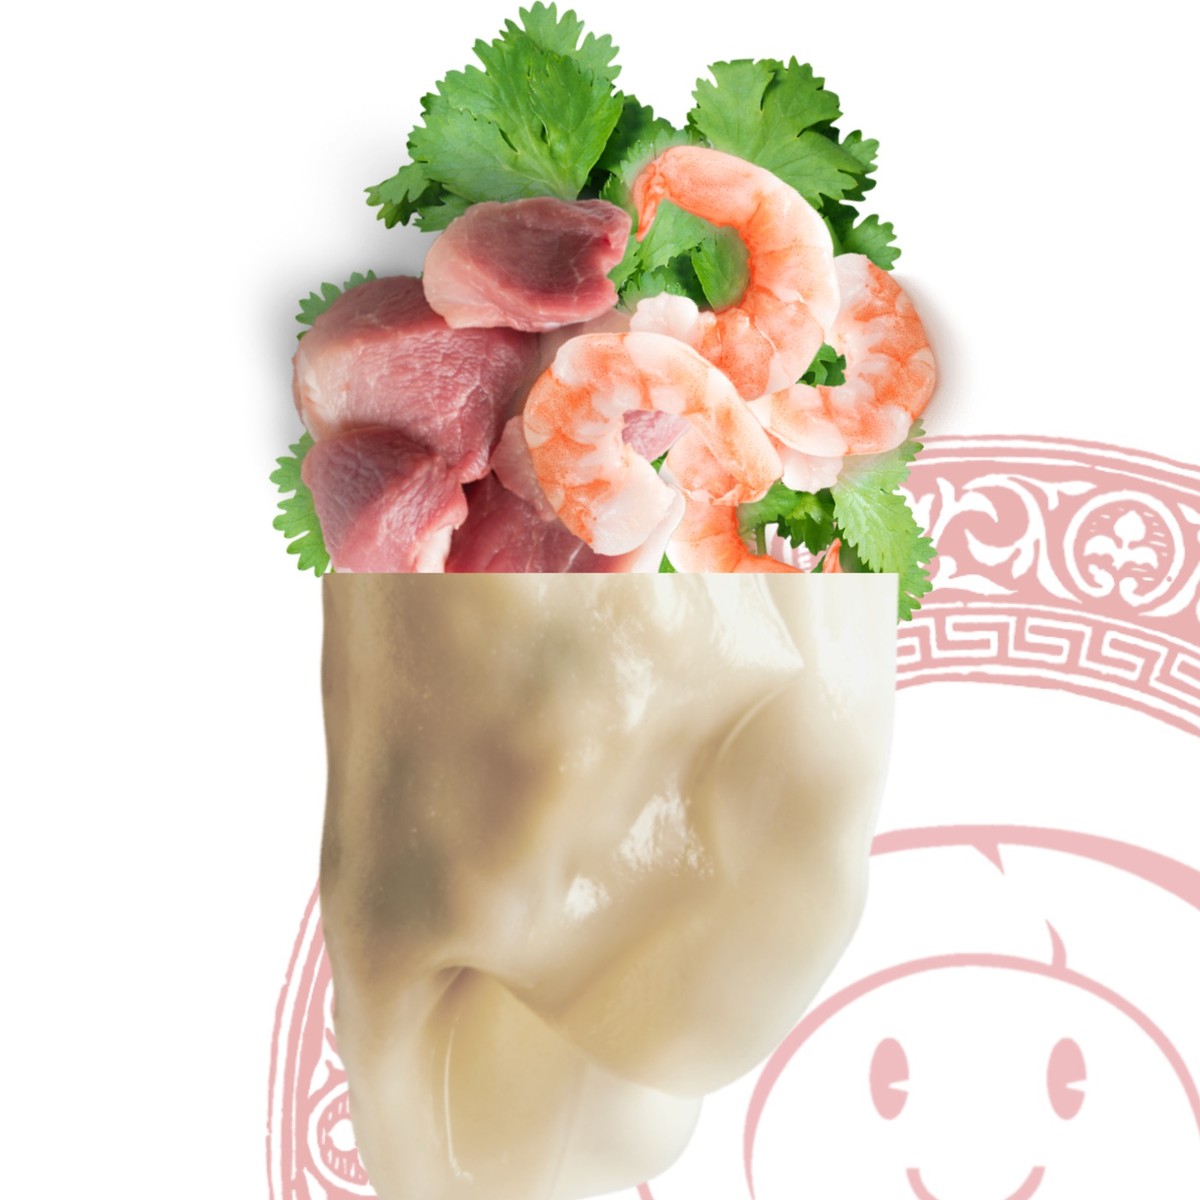 Dumplings (Gyoza) de porc et crevettes